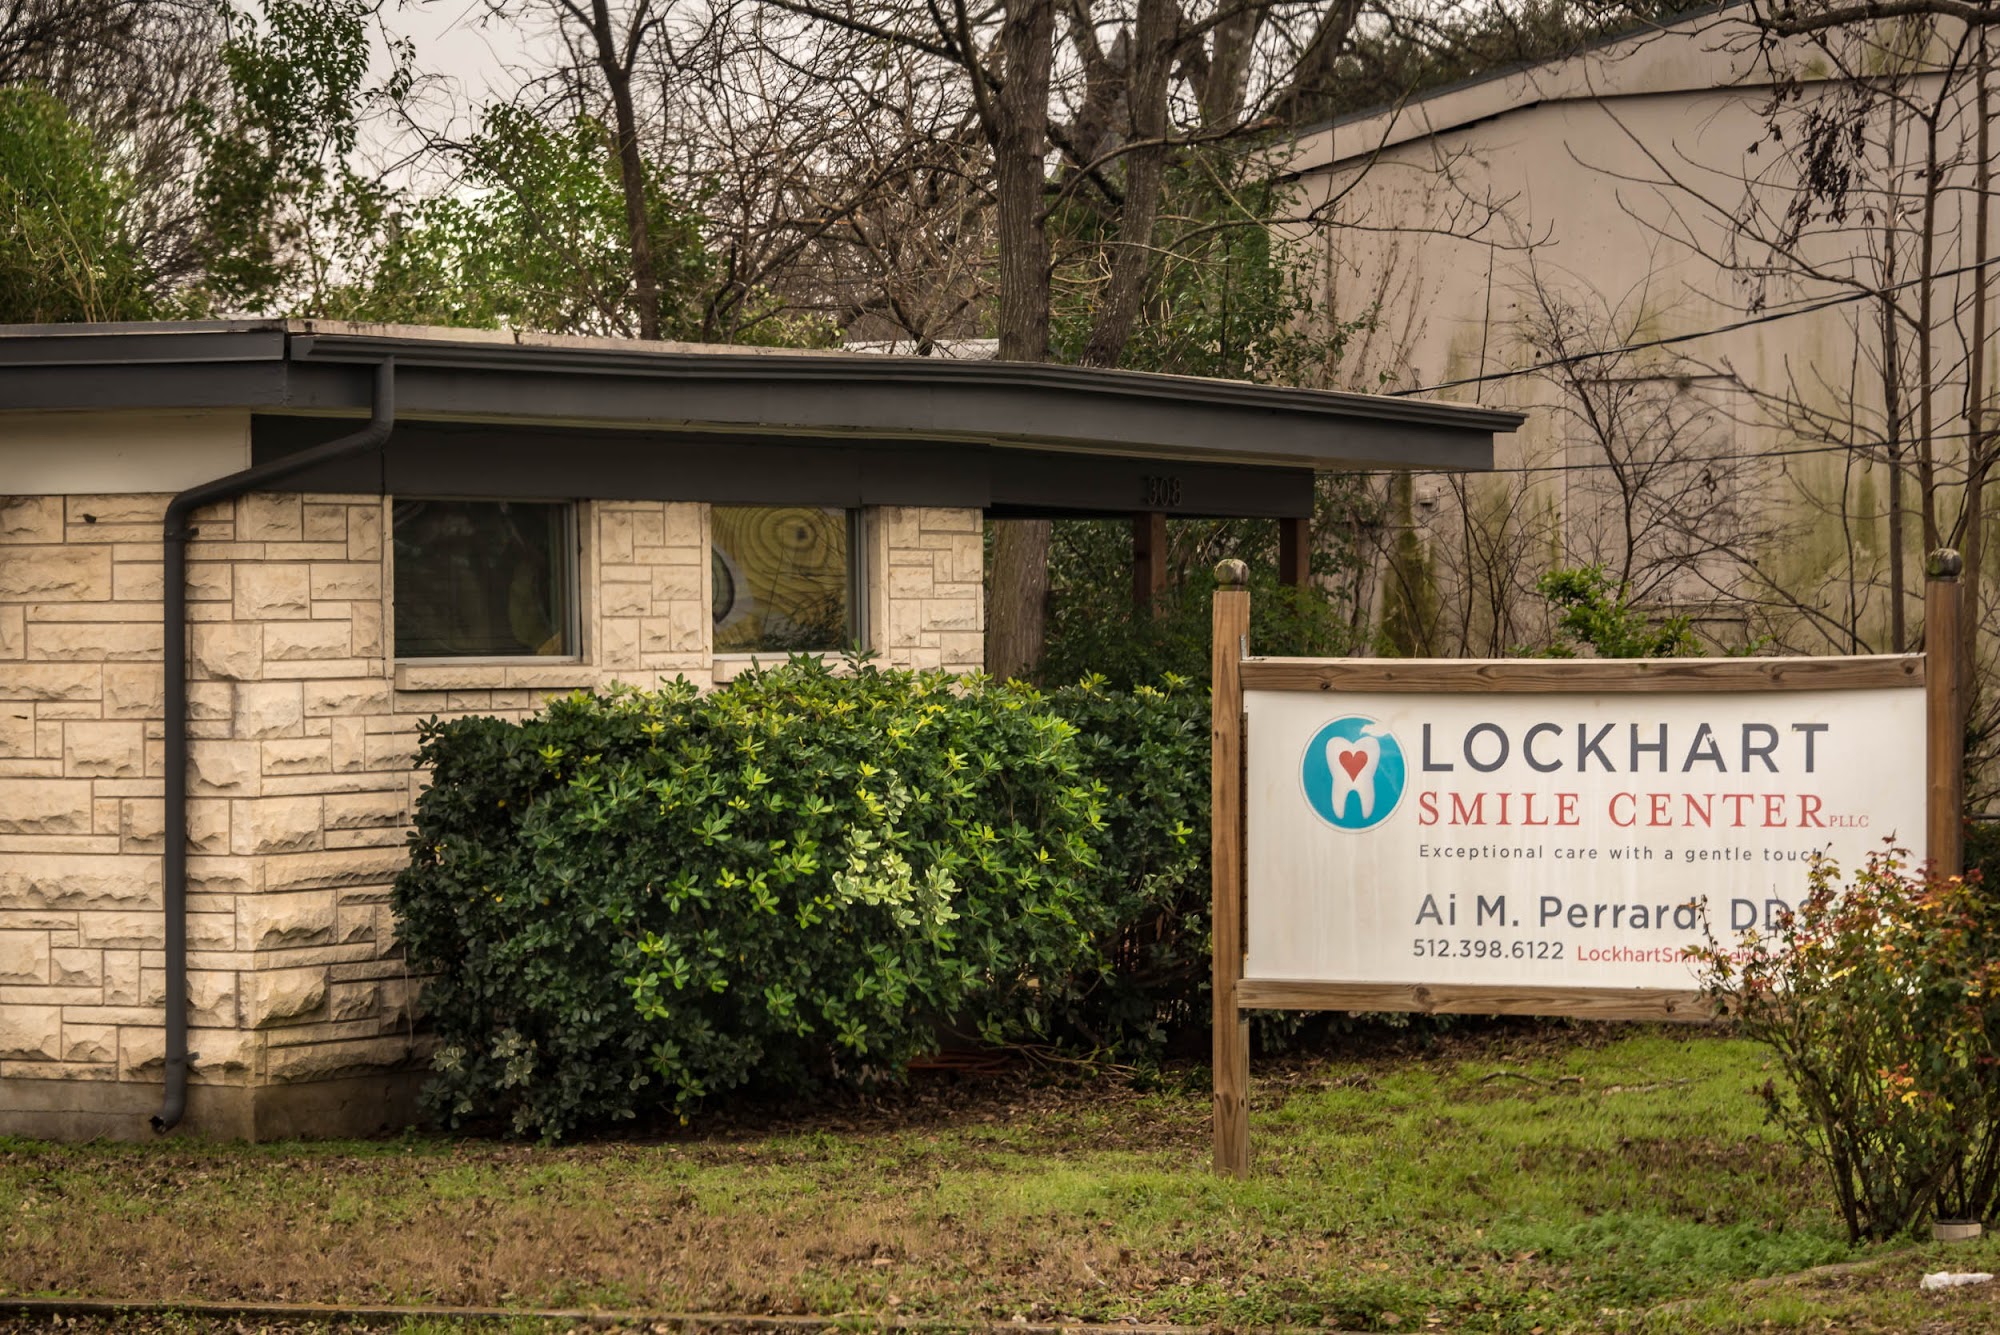 Lockhart Smile Center 308 S Main St, Lockhart Texas 78644